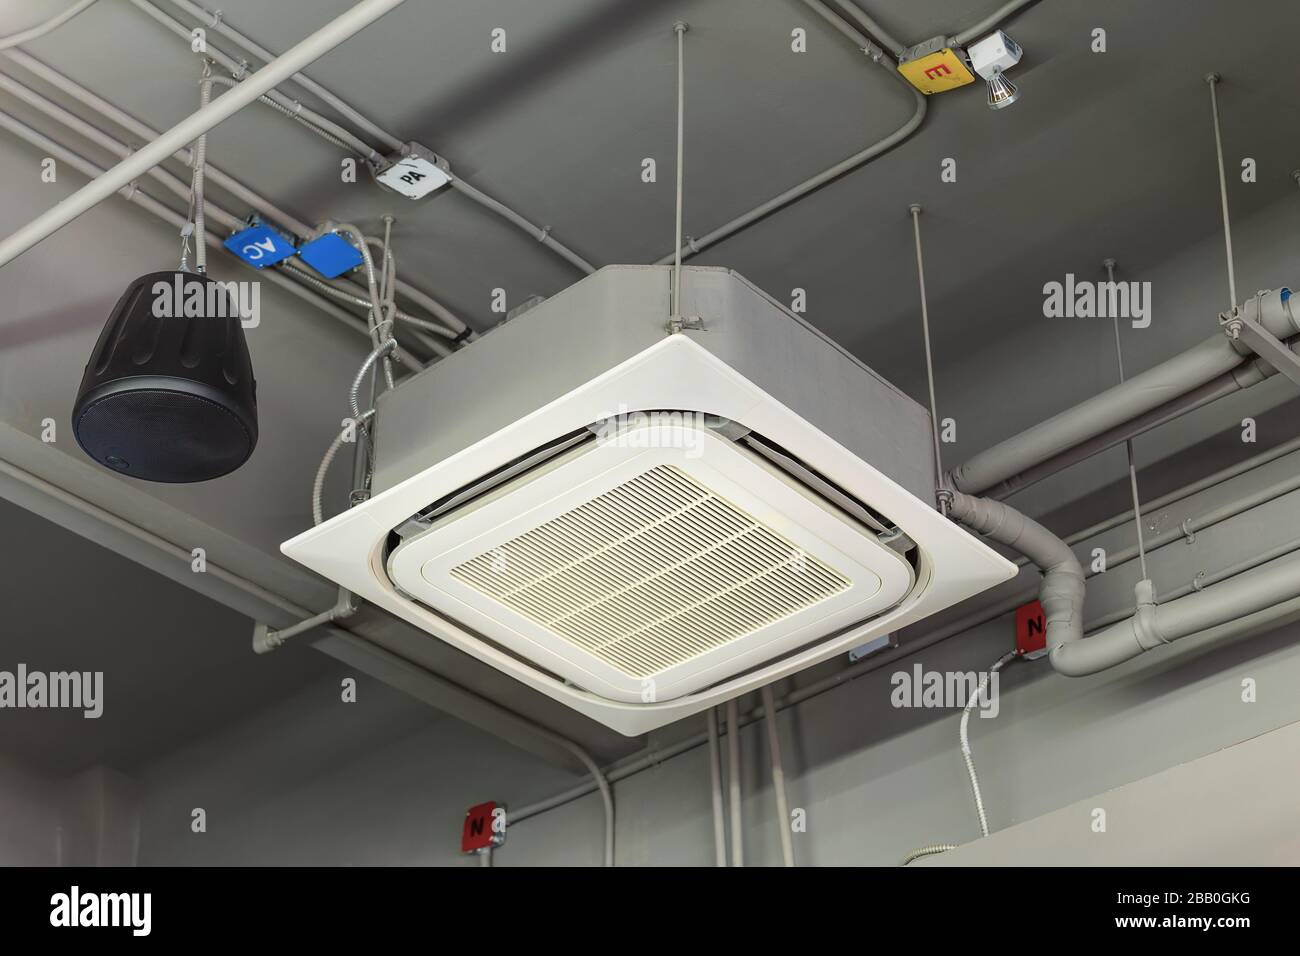 Deckenmontage der Kassetten-Klimaanlage Stockfotografie - Alamy